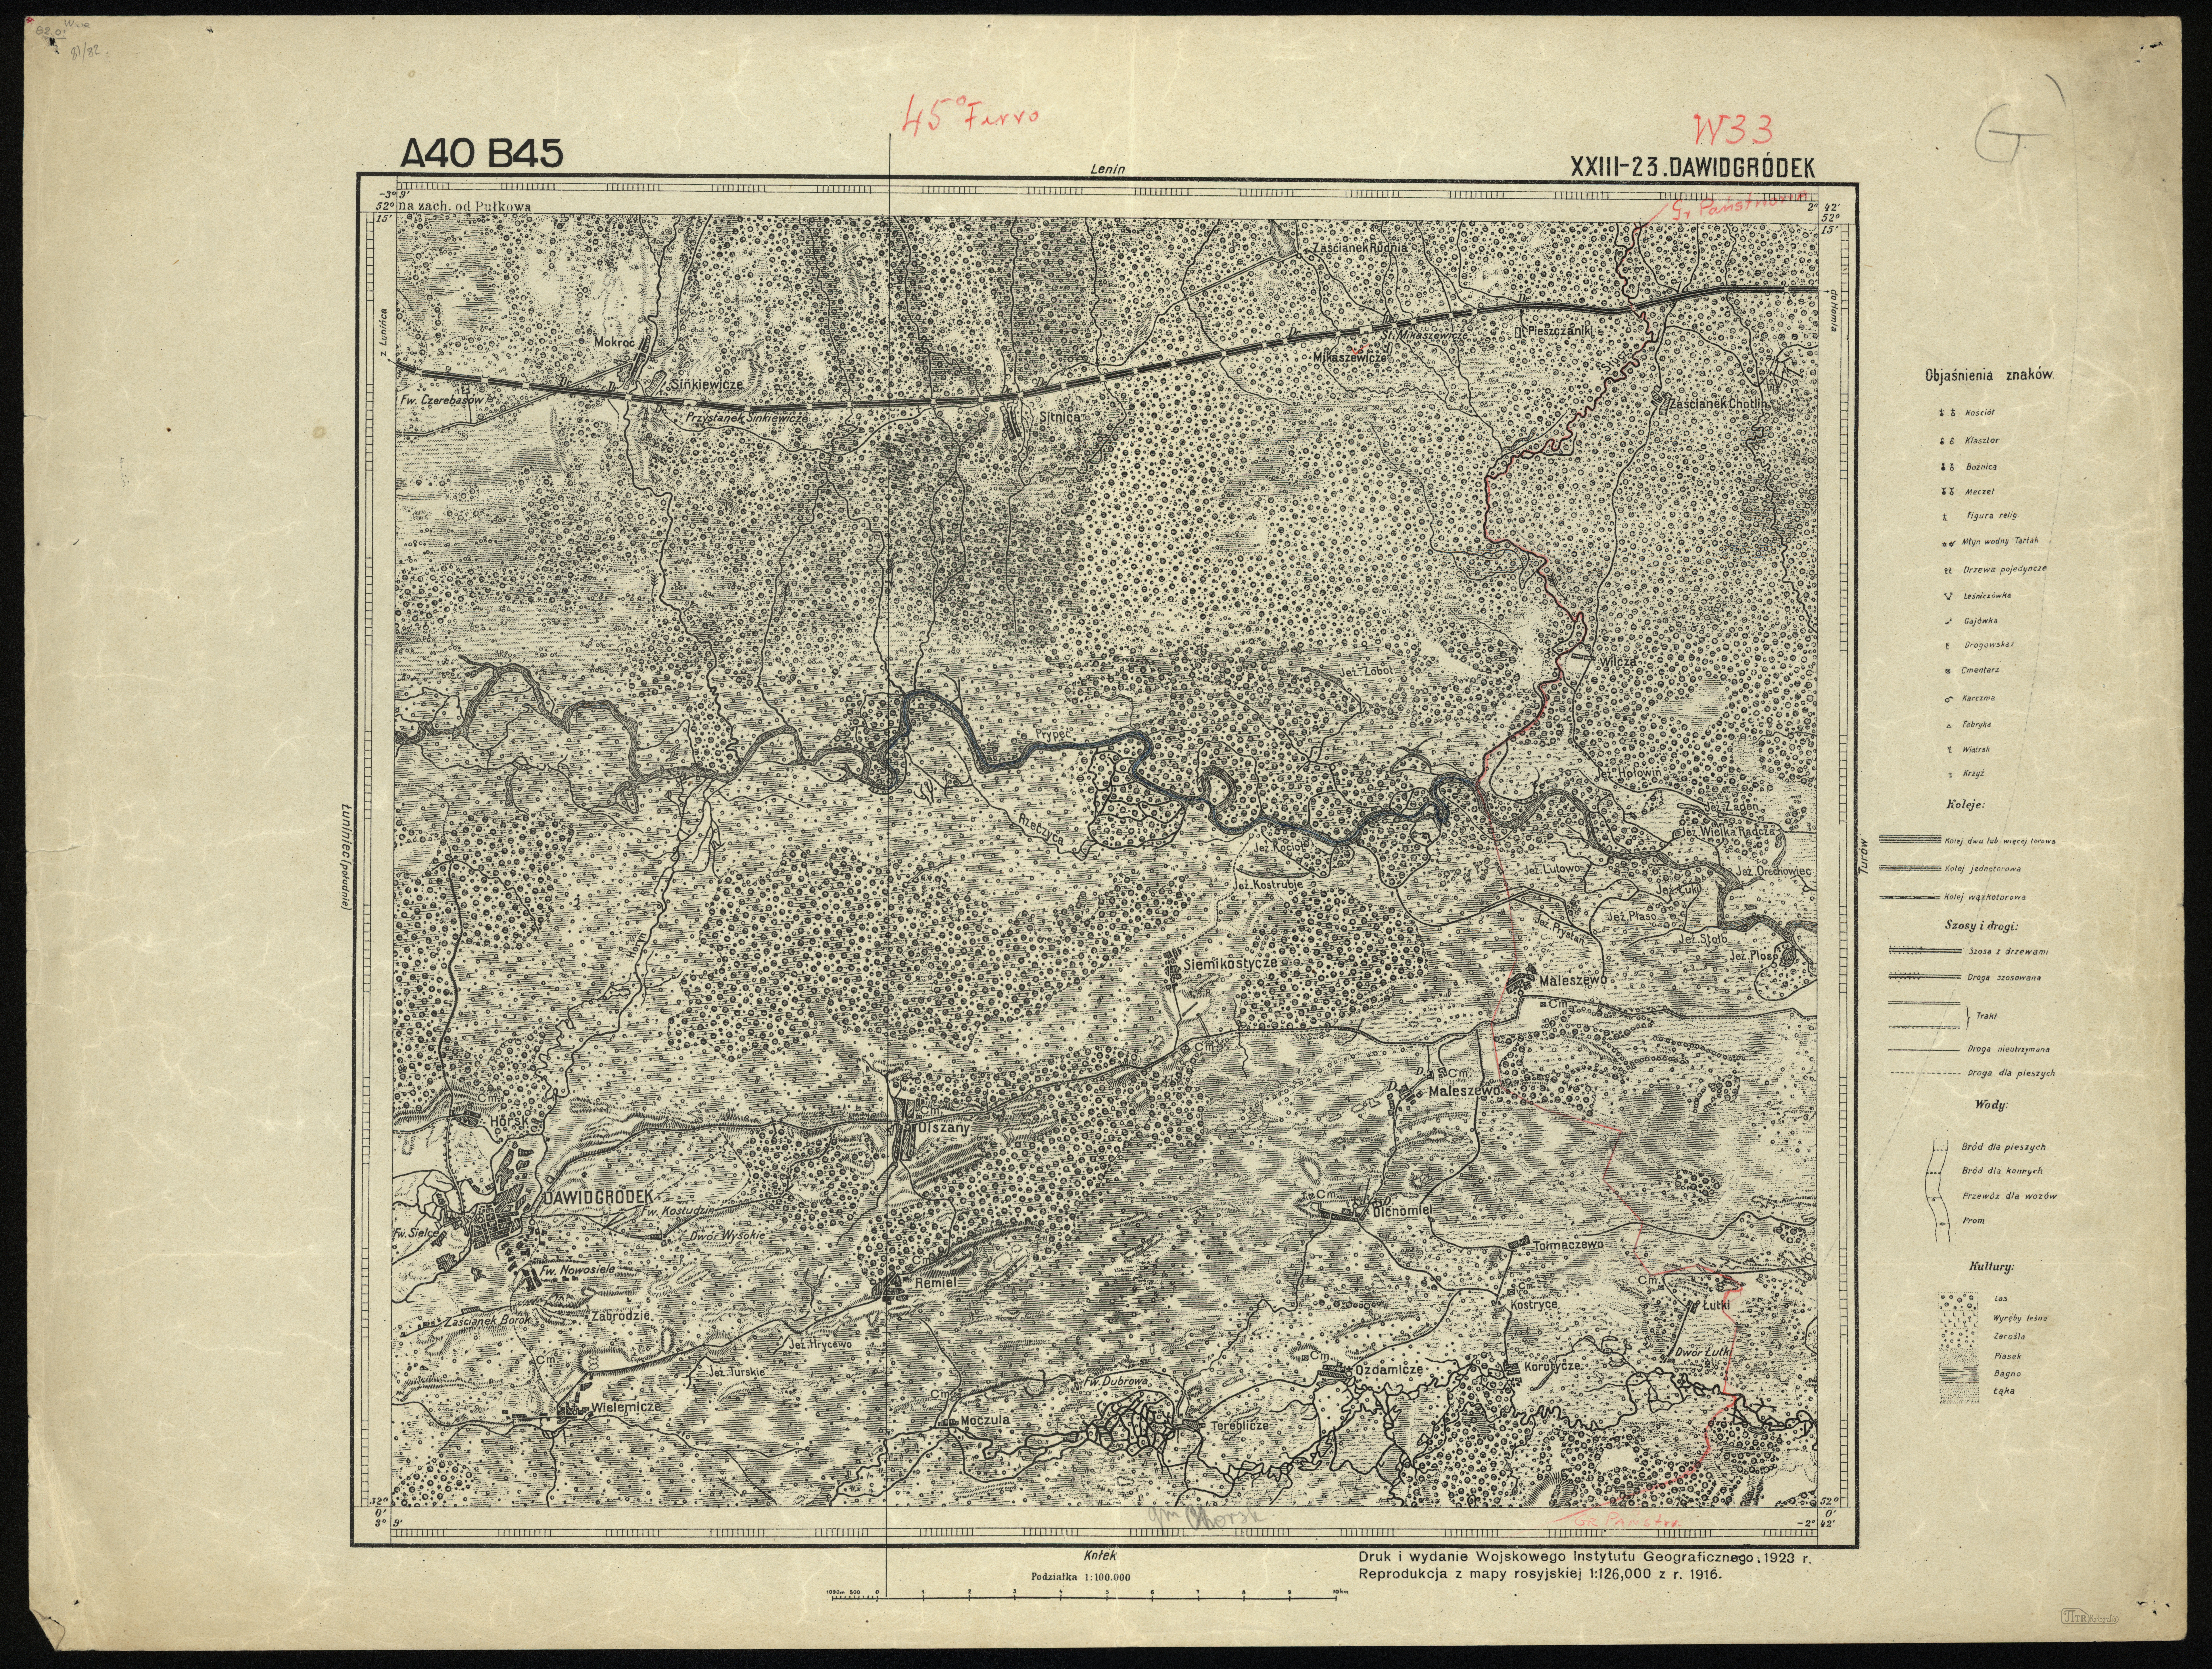 Mapa taktyczna Polski 1_100 000 - przedruki map zaborczych w cięciu rosyjskim - A40_B45_XXIII-23_DAWIDGRODEK_2_1923.jpg